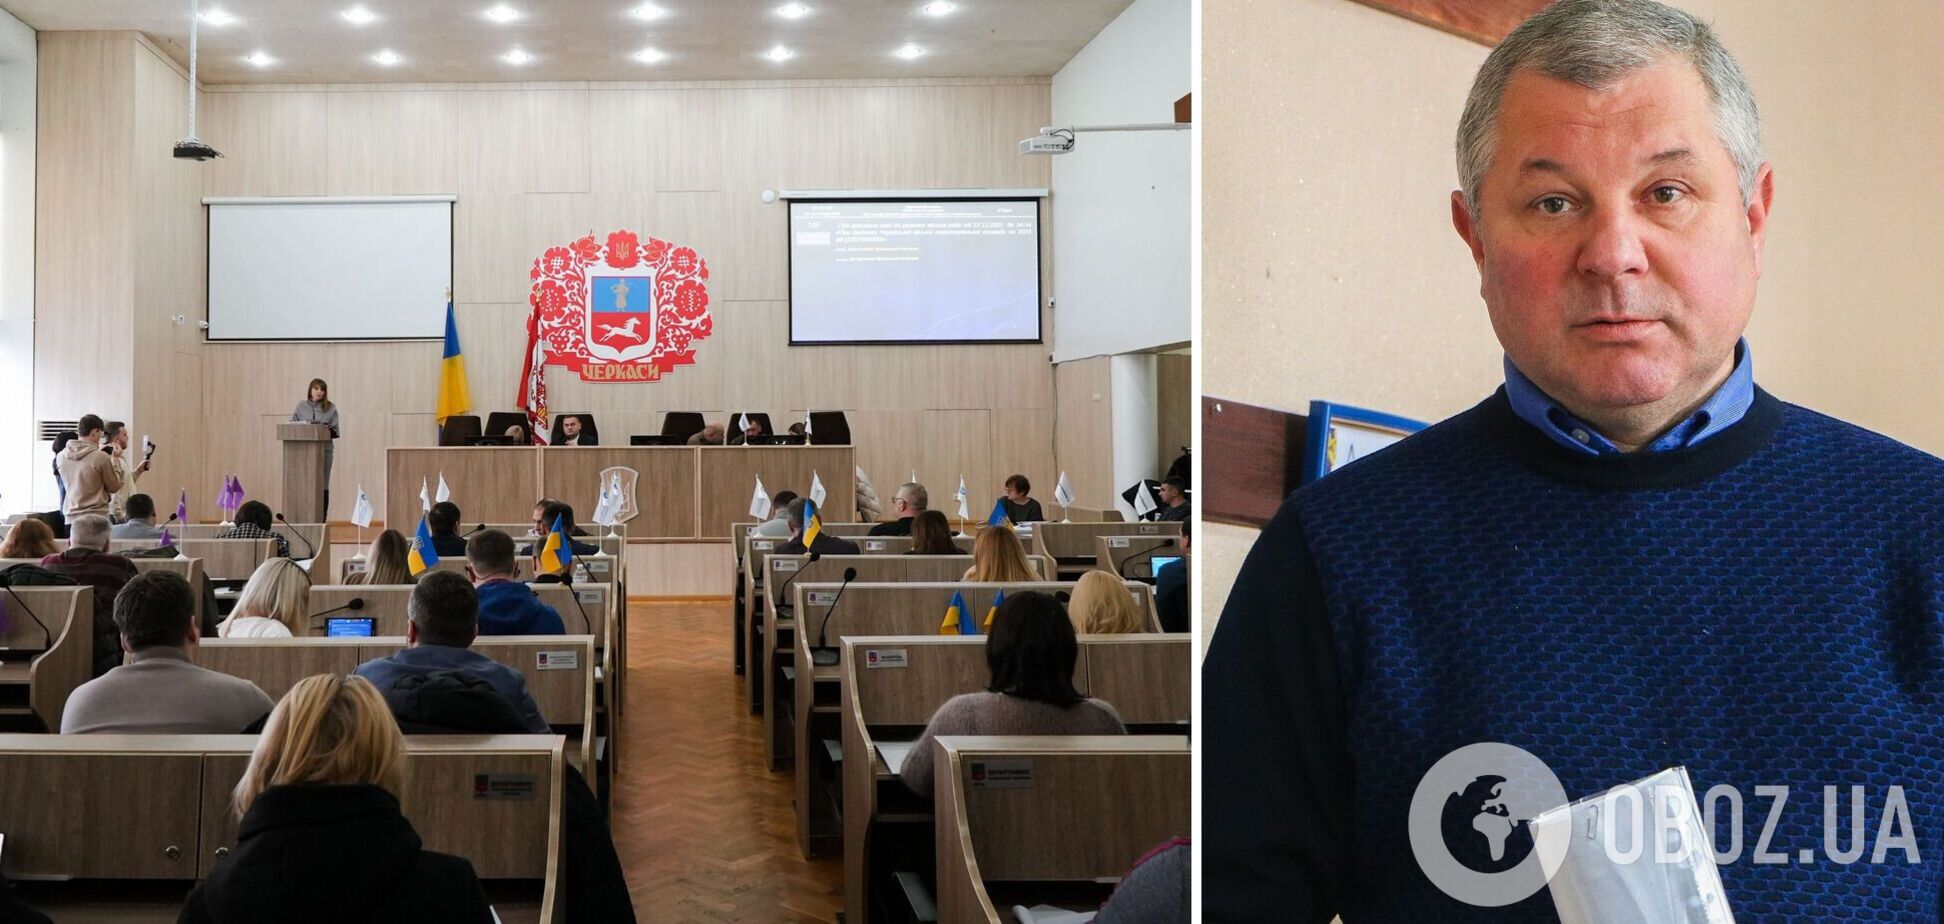 В Черкассах хотят уволить чиновника из-за покупки дорогостоящего медоборудования: на сессии горсовета возник скандал